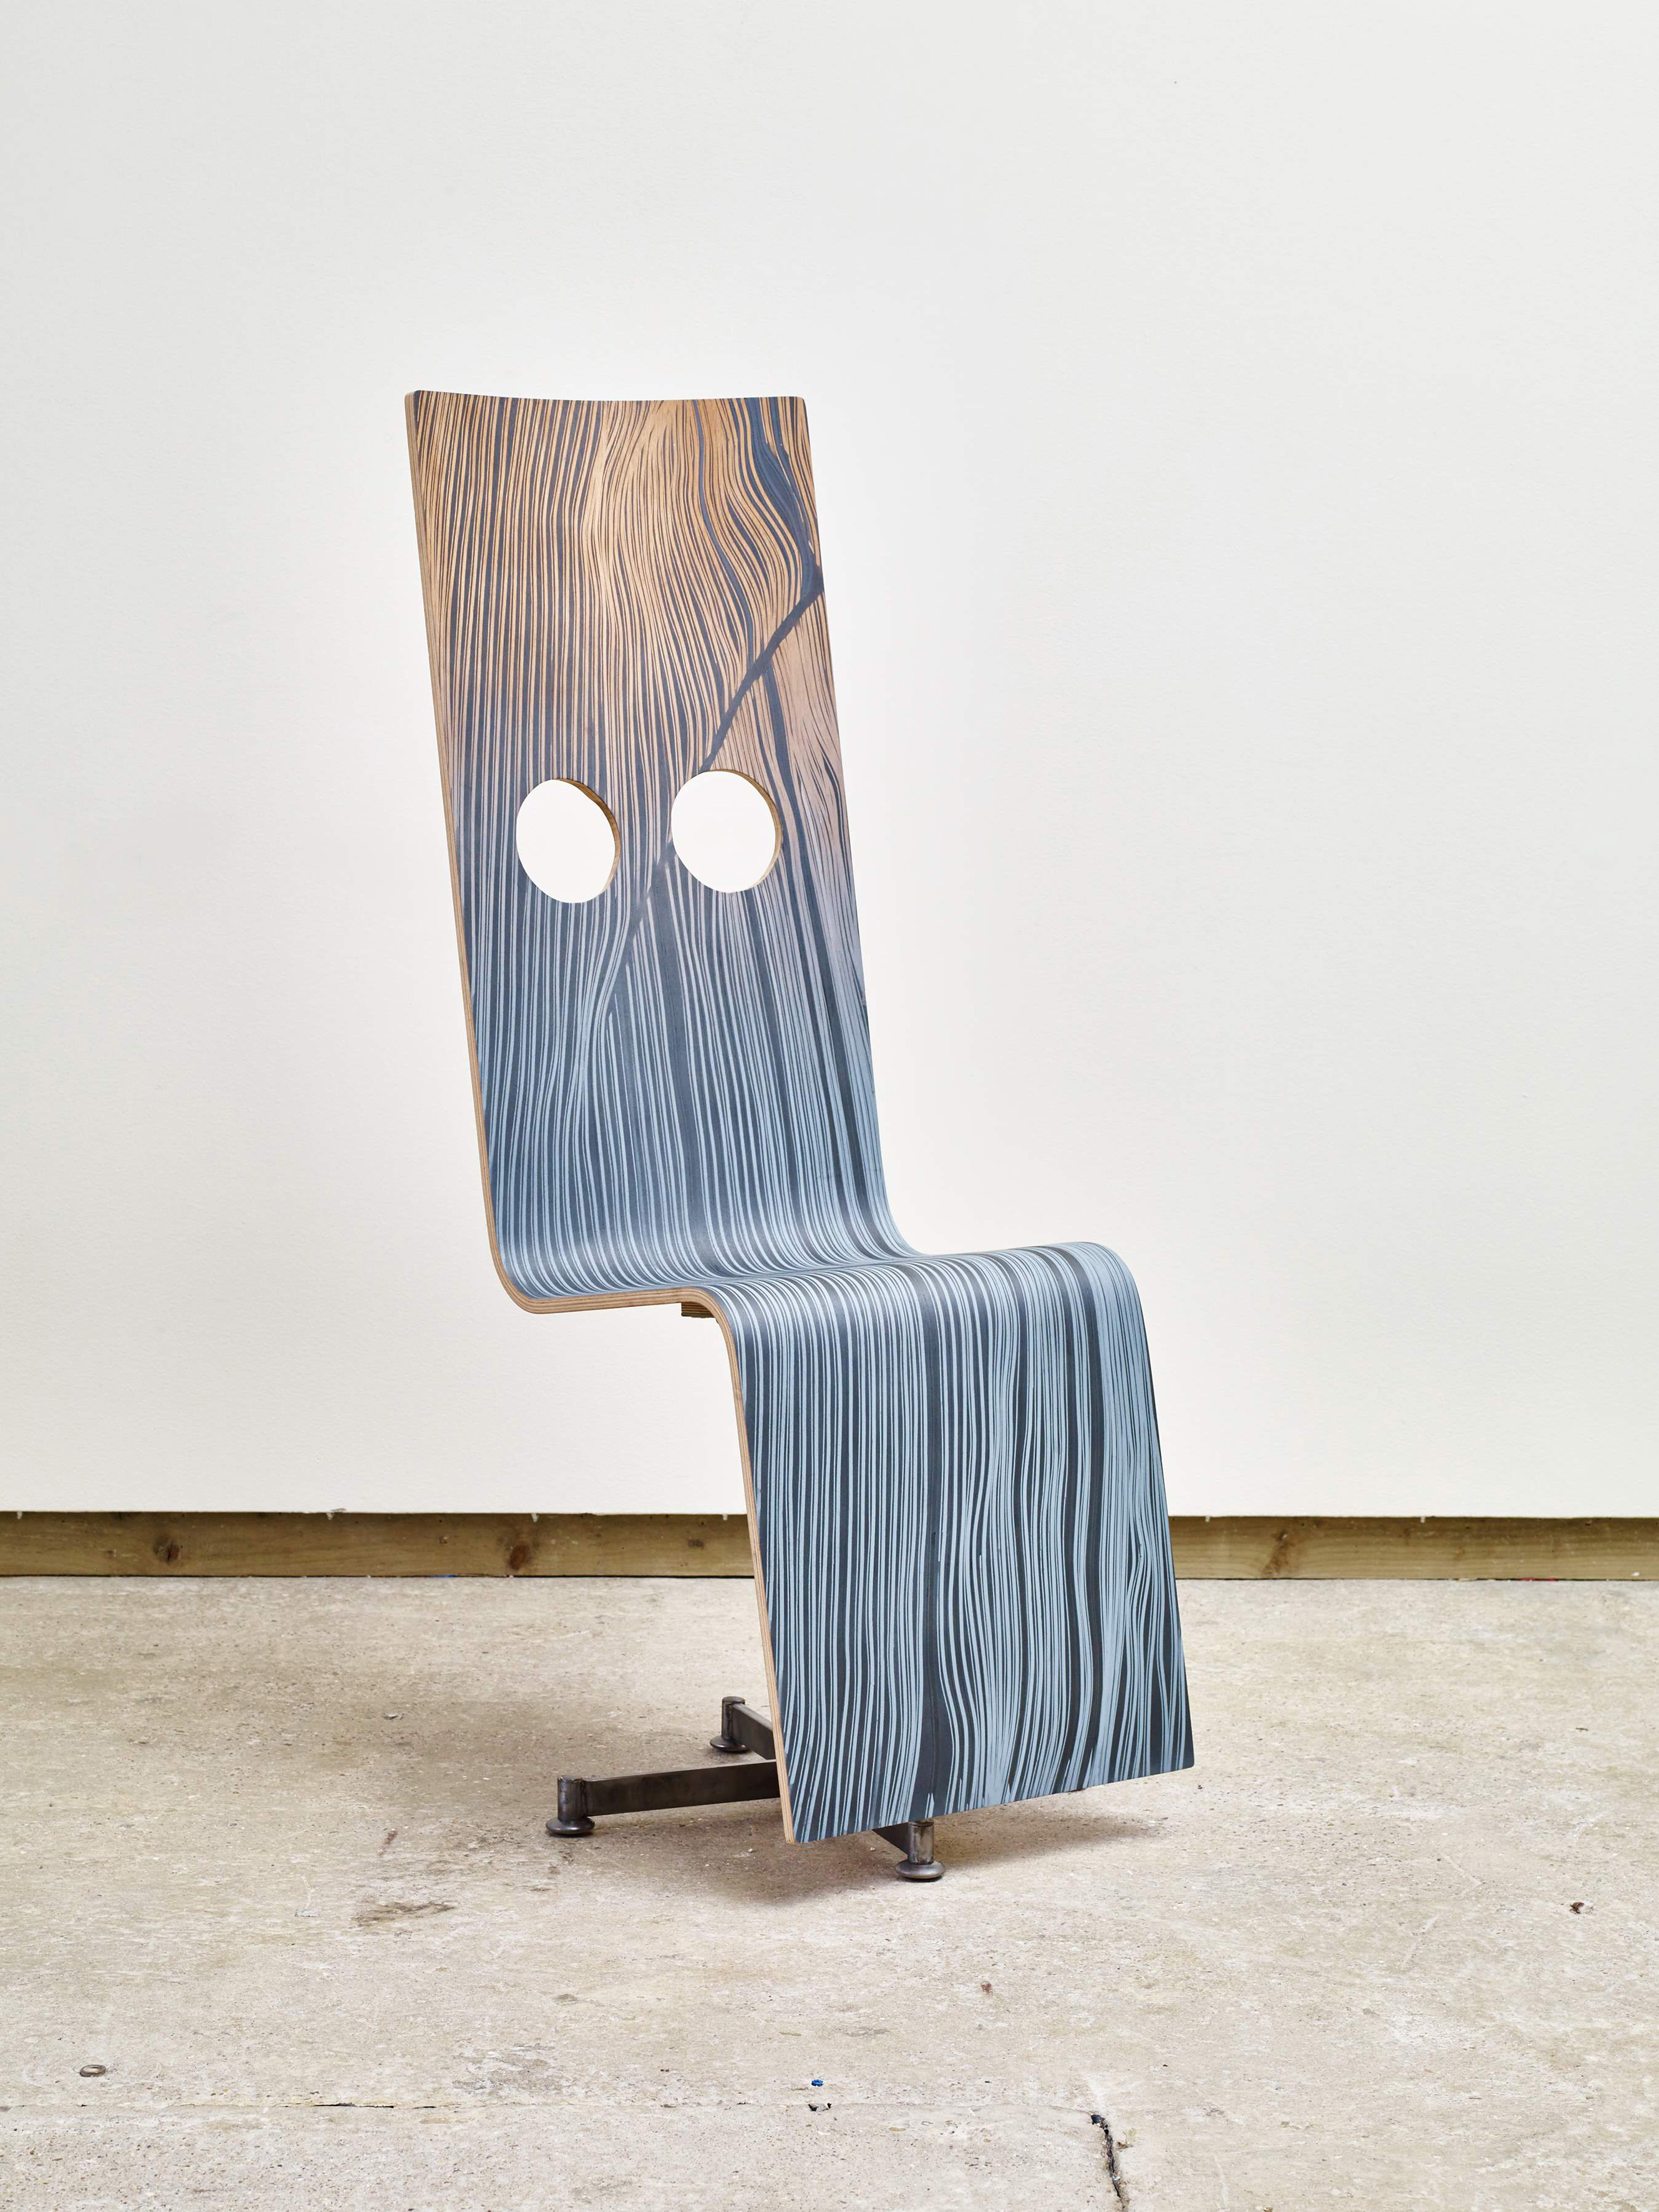 Galerie Barbara Thumm \ Fiona Banner: Pinstripe Chair 3 (FBa-15-020) \ Pinstripe Chair 3 (2015)